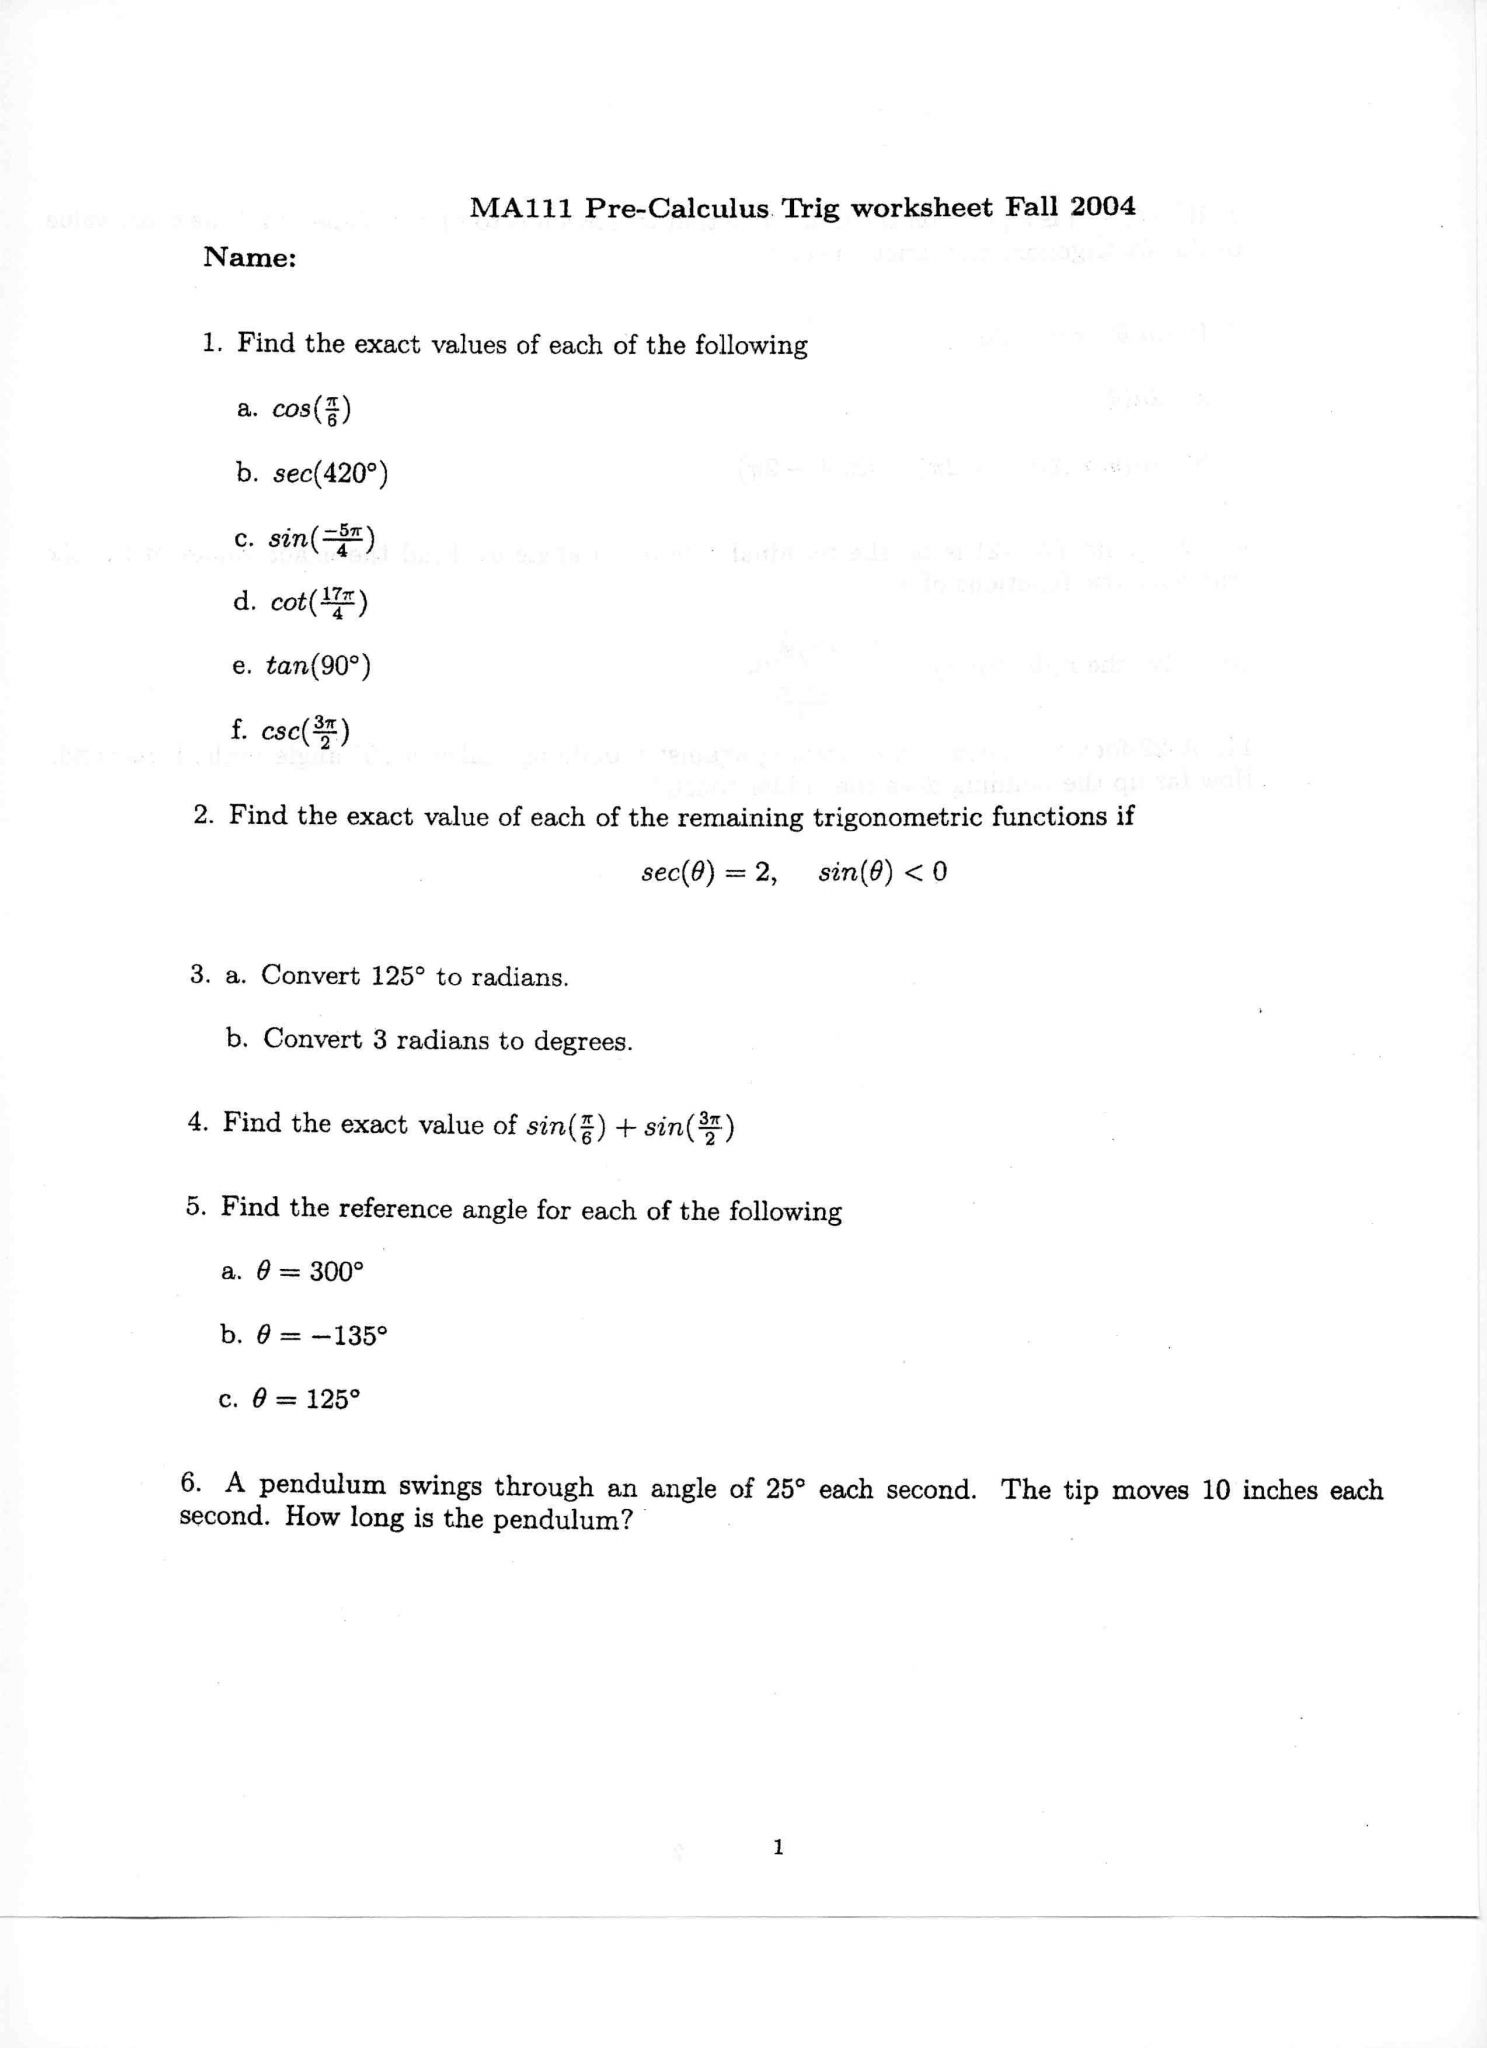 Experimental Design Worksheet Scientific Method as Well as Science Variables Worksheet Gallery Worksheet Math for Kids